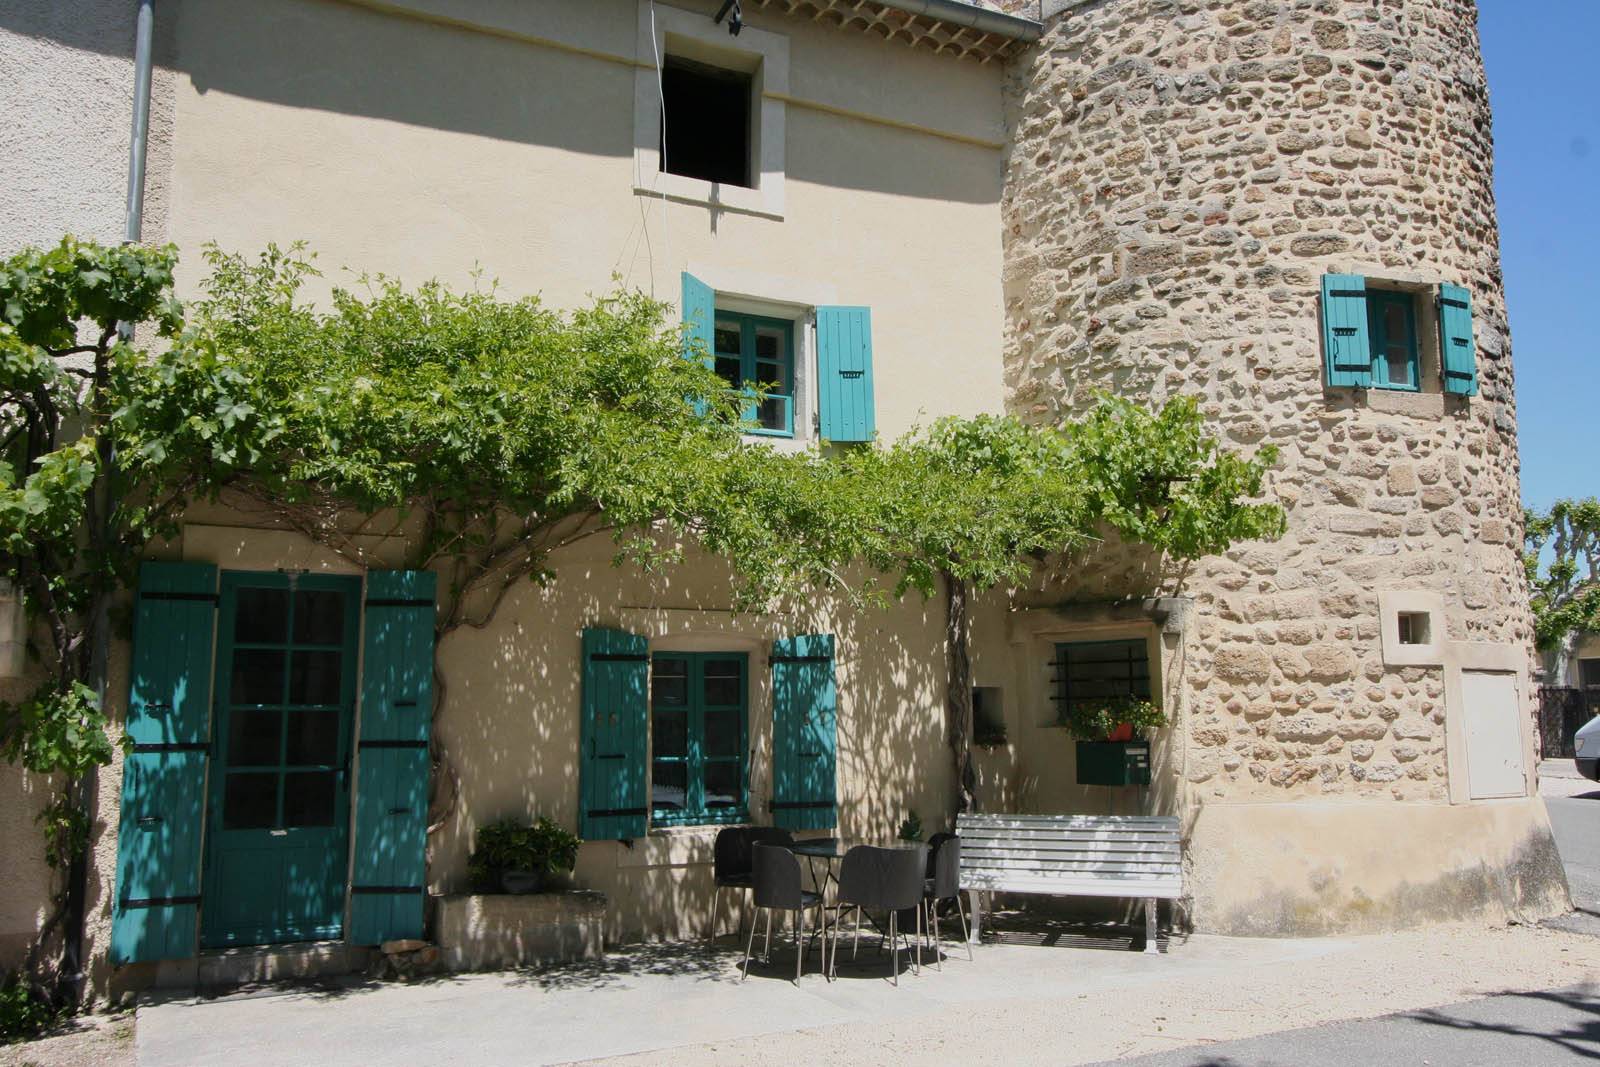 A vendre, Maison de village Au coeur de la Drôme Provençale terrasses A vendre, Maison de village Au coeur de la Drôme Provençale beaucoup de charme terrasses